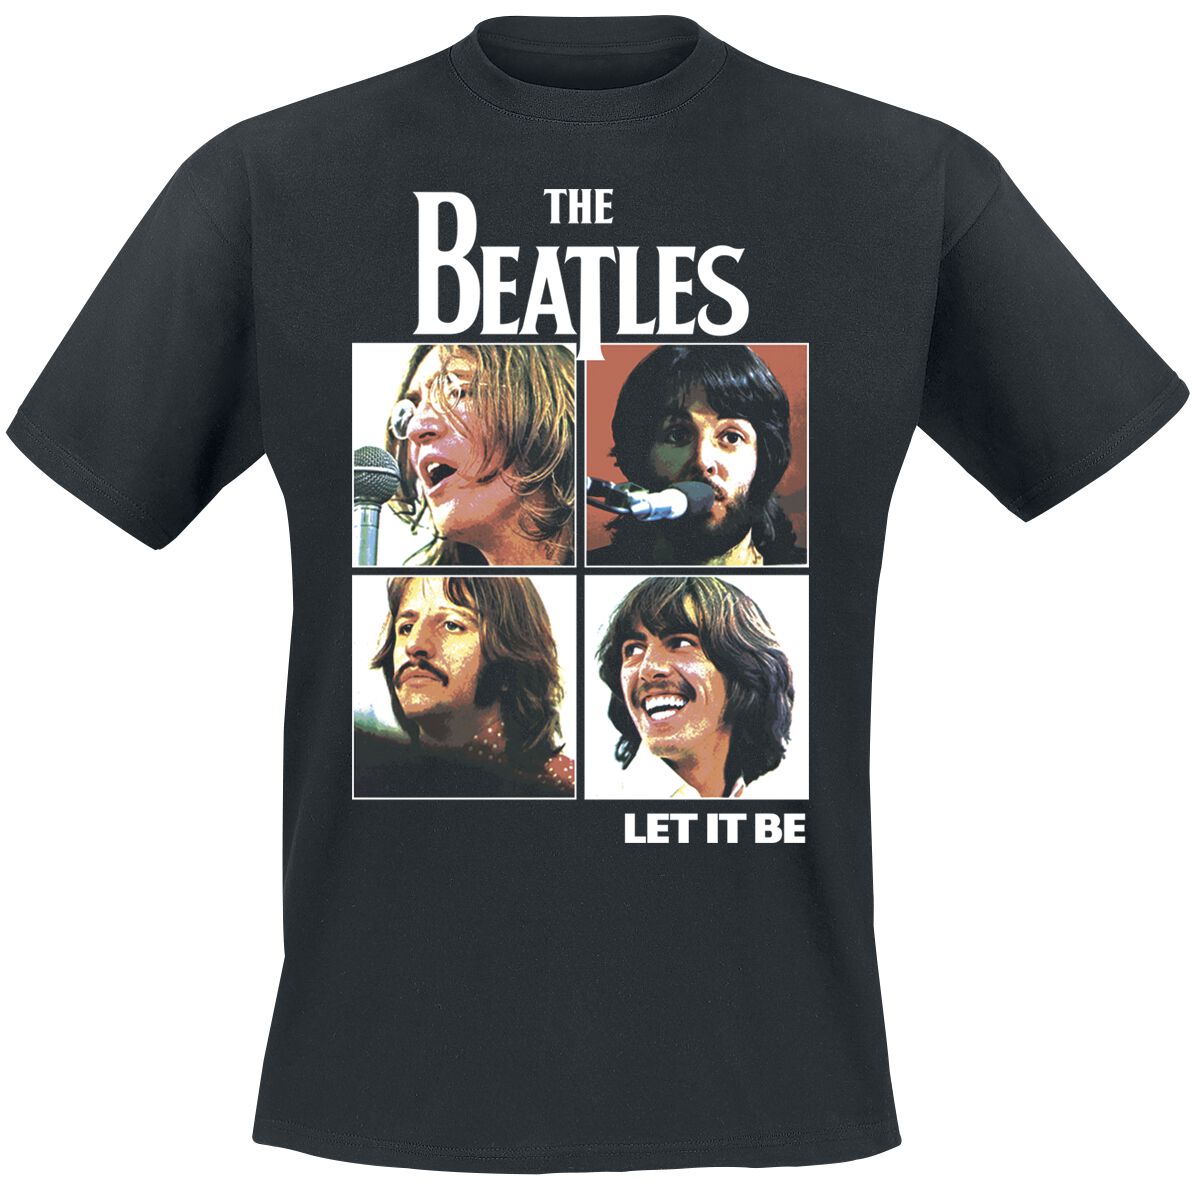 The Beatles T-Shirt - Let it be - S bis XXL - für Männer - Größe XXL - schwarz  - Lizenziertes Merchandise! von The Beatles